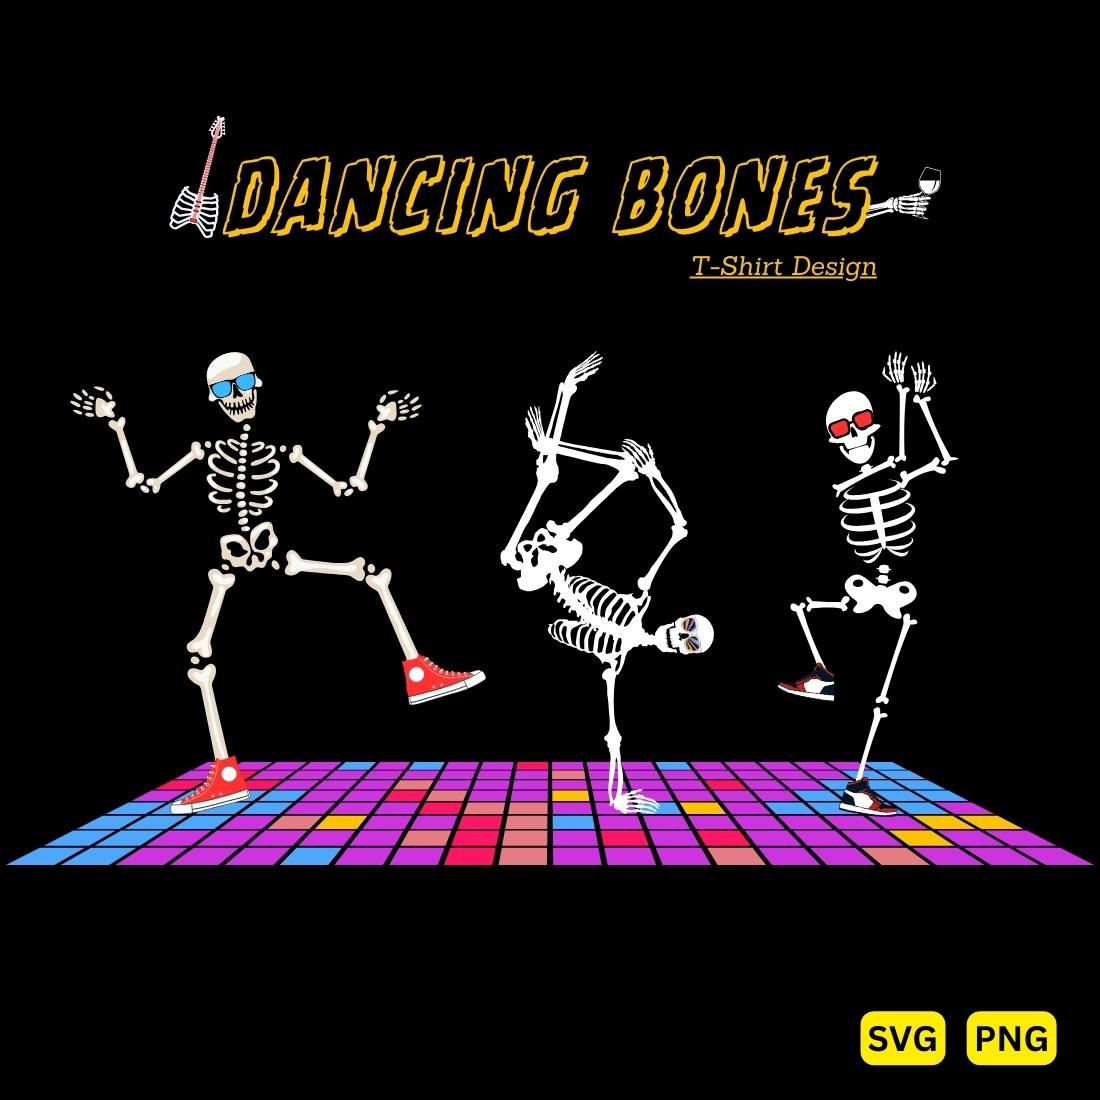 DANCING BONES FUNNY T-SHIRT DESIGN cover image.